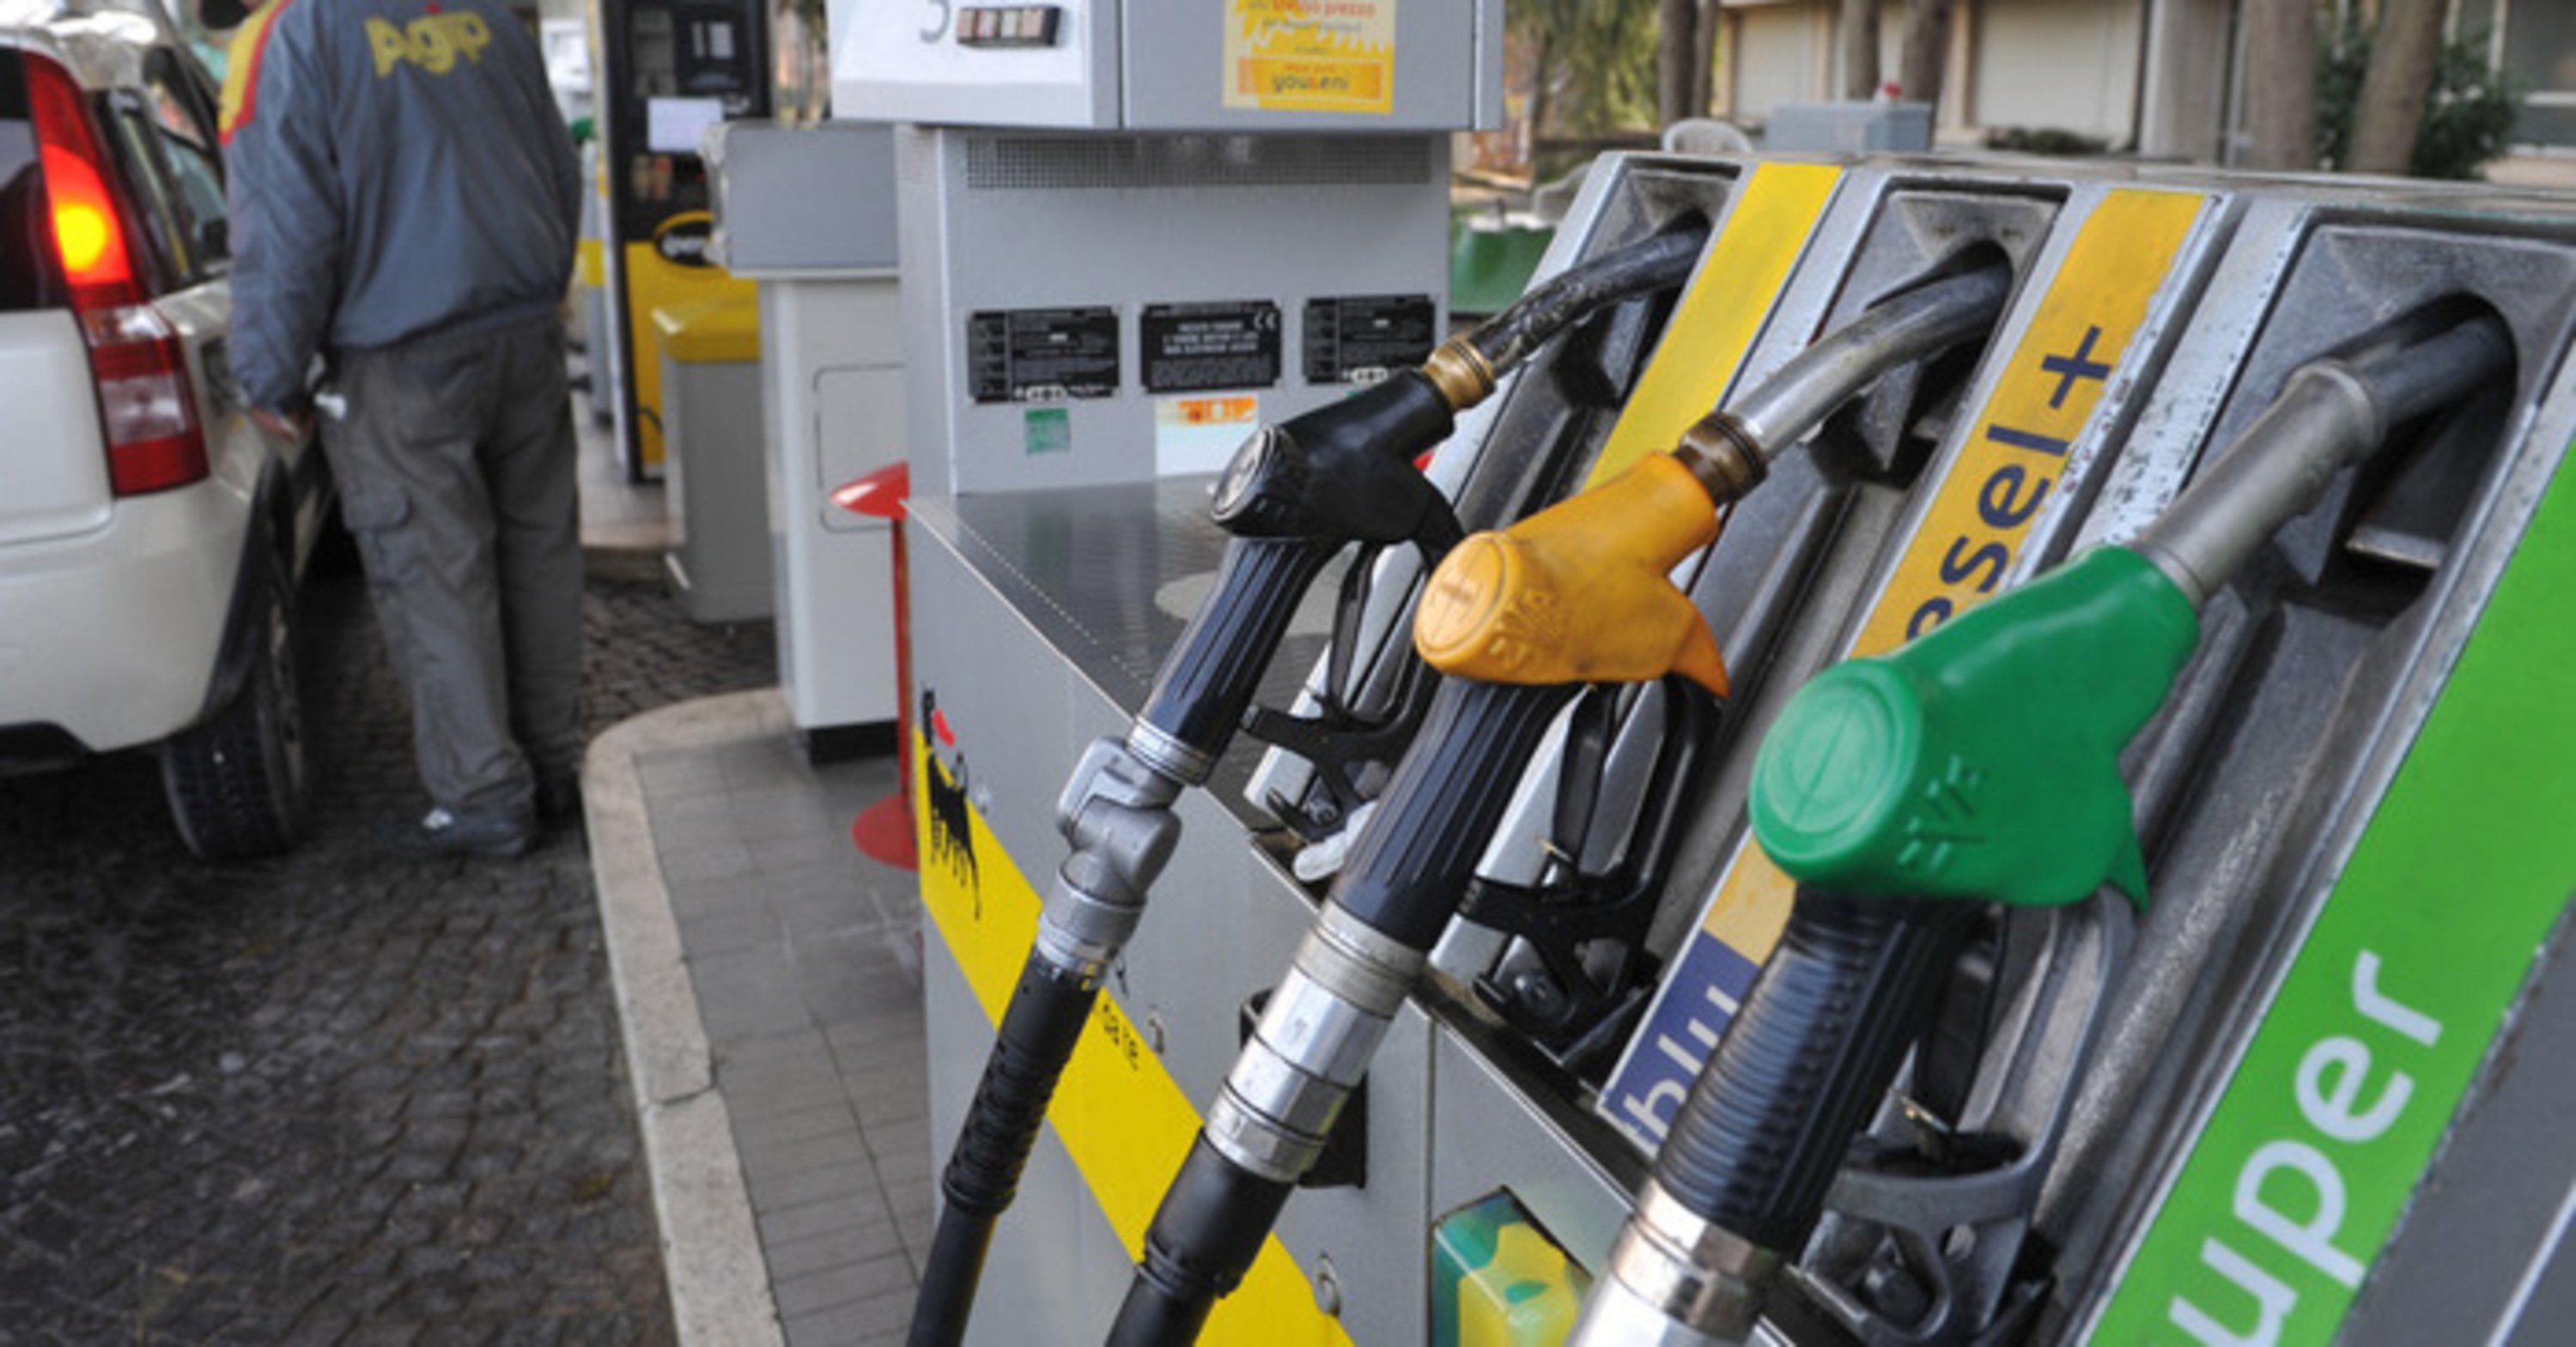  Carburanti, i prezzi salgono ancora